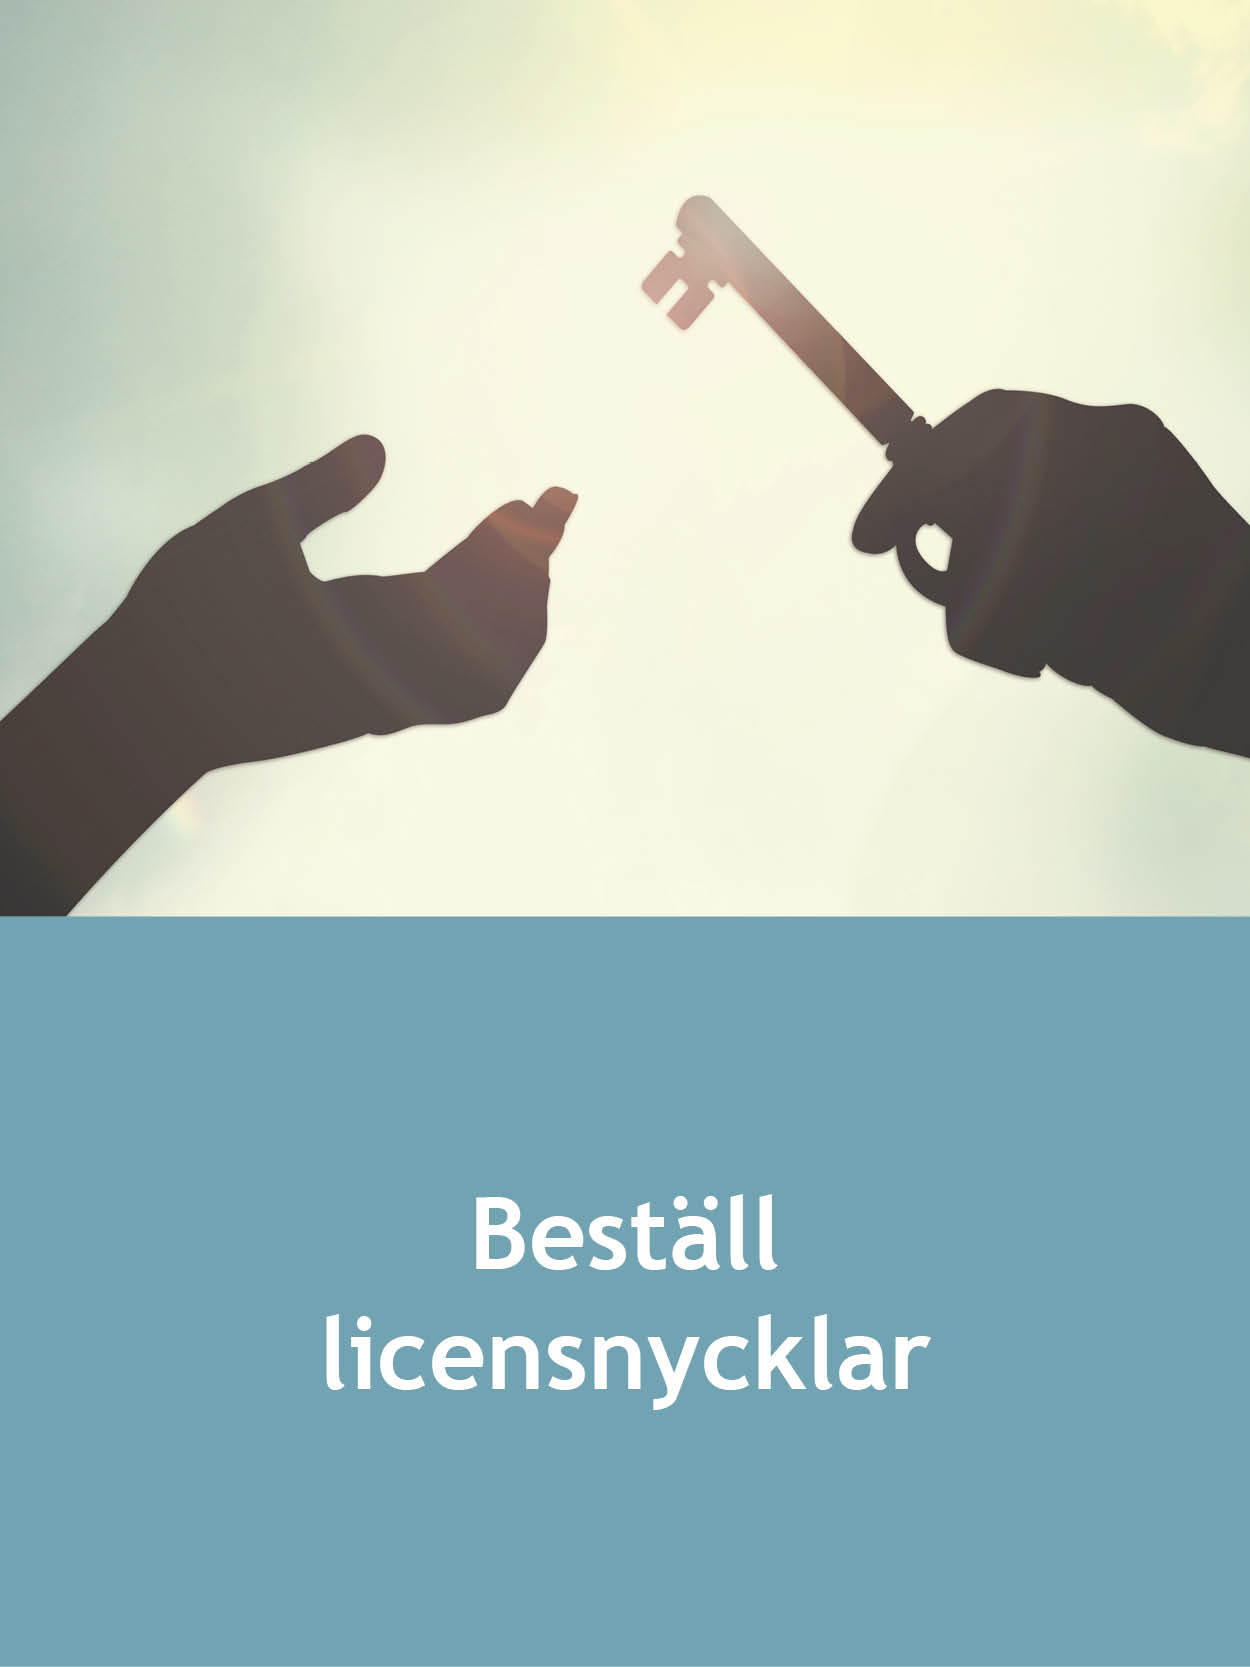 Beställ licensnycklar SE